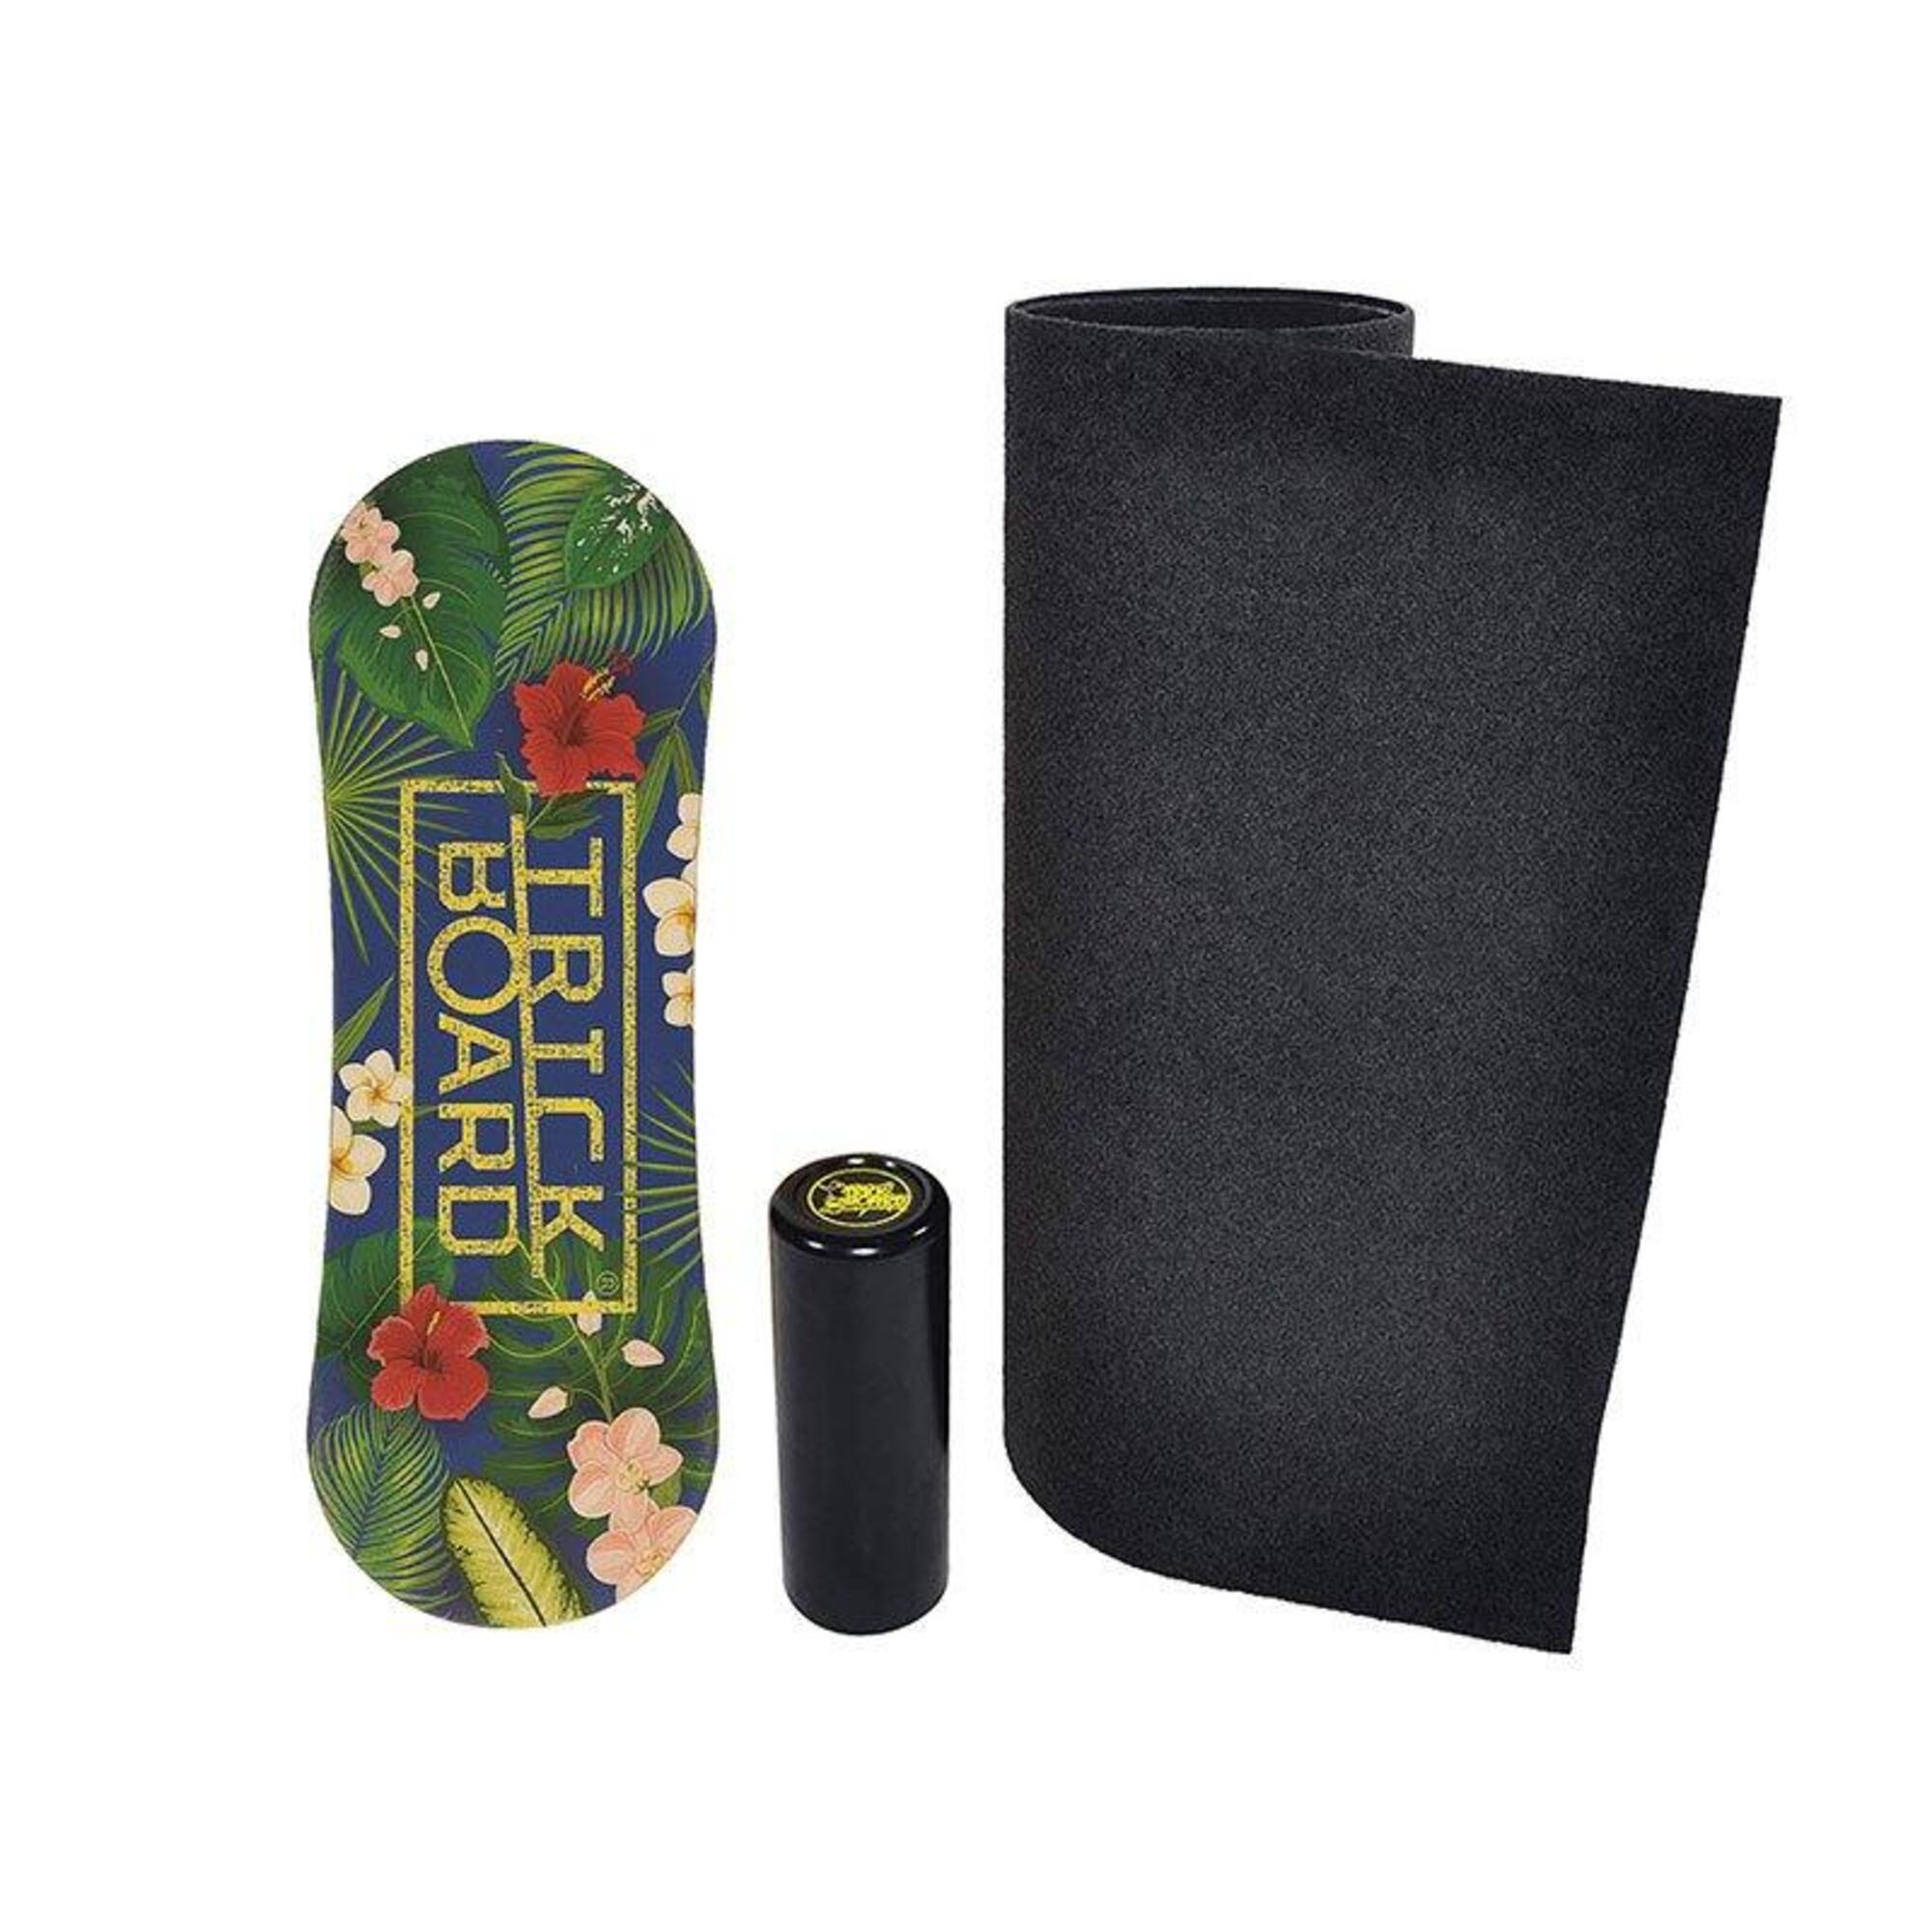 Deska do balansowania Trickboard Tropical New z dywanem